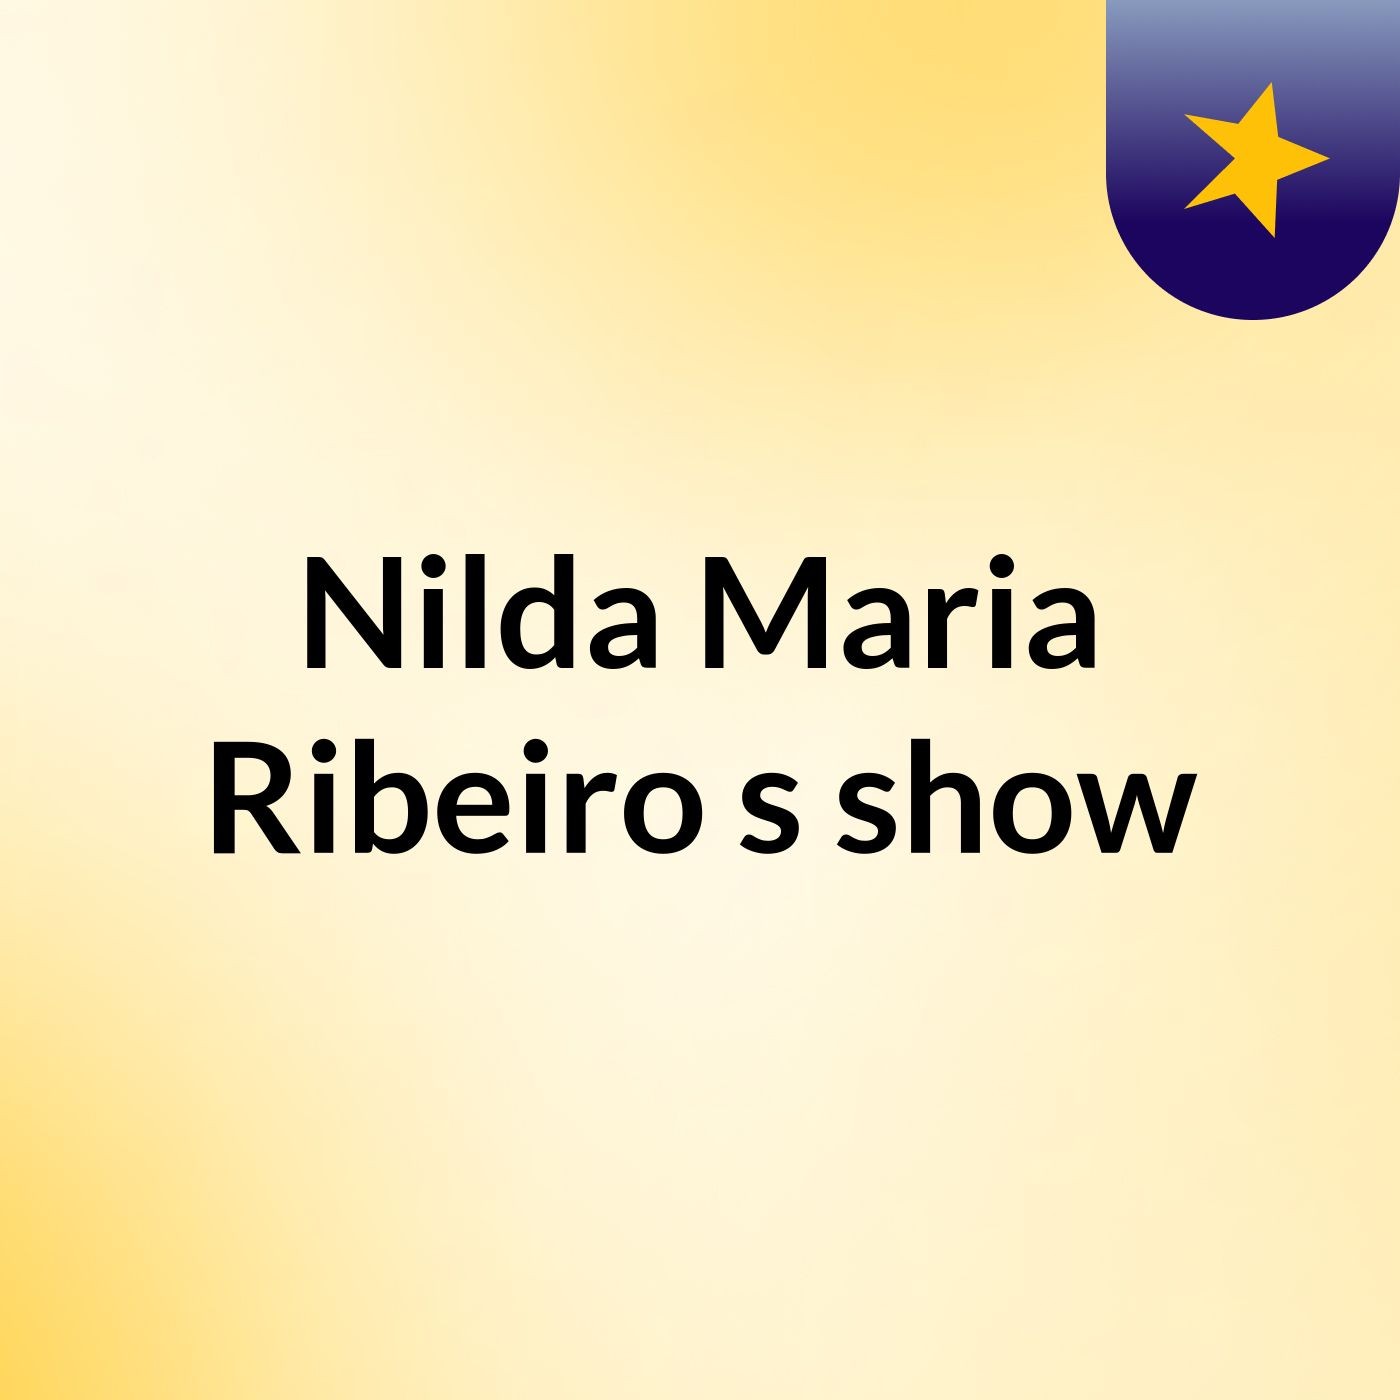 Nilda Maria Ribeiro's show